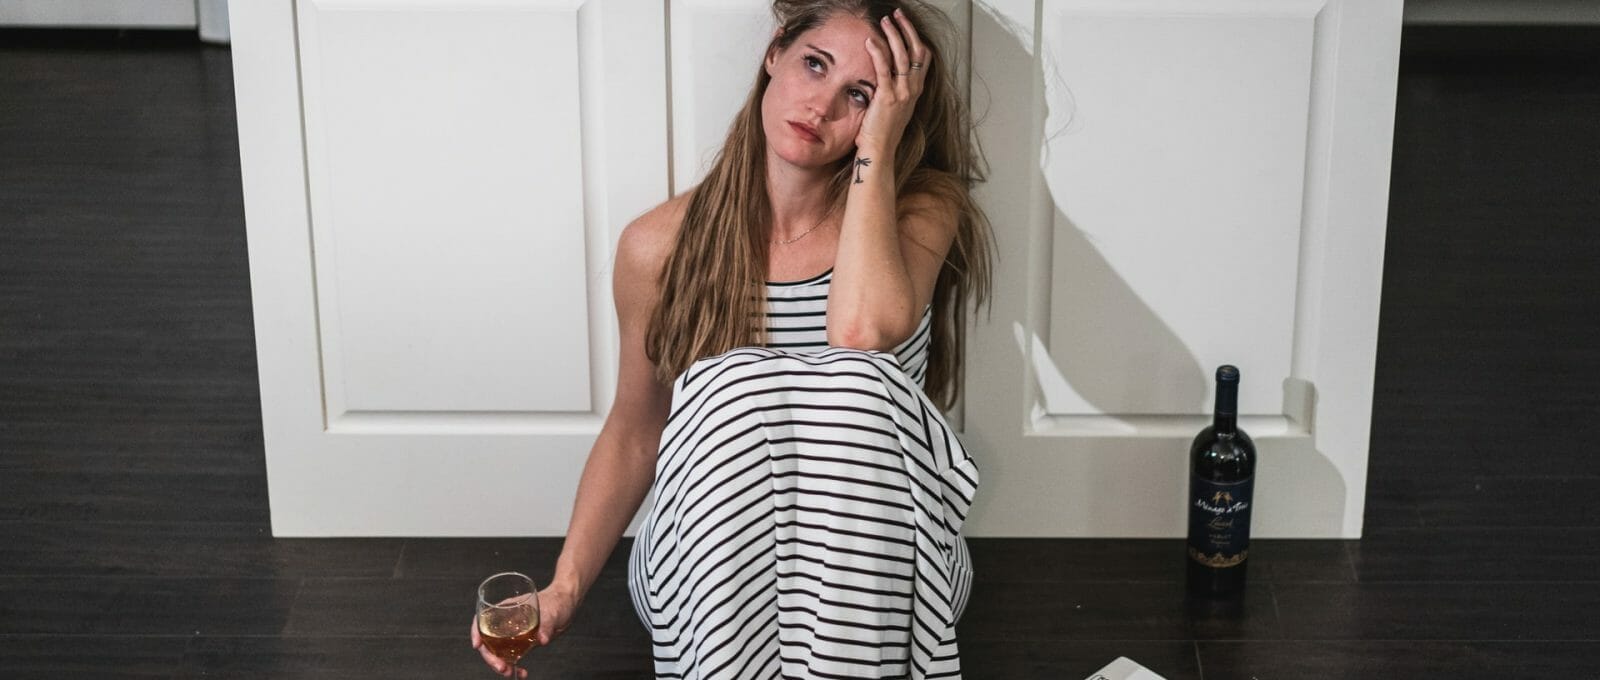 Mulher desolada sentada no chão da cozinha, bebendo vinho